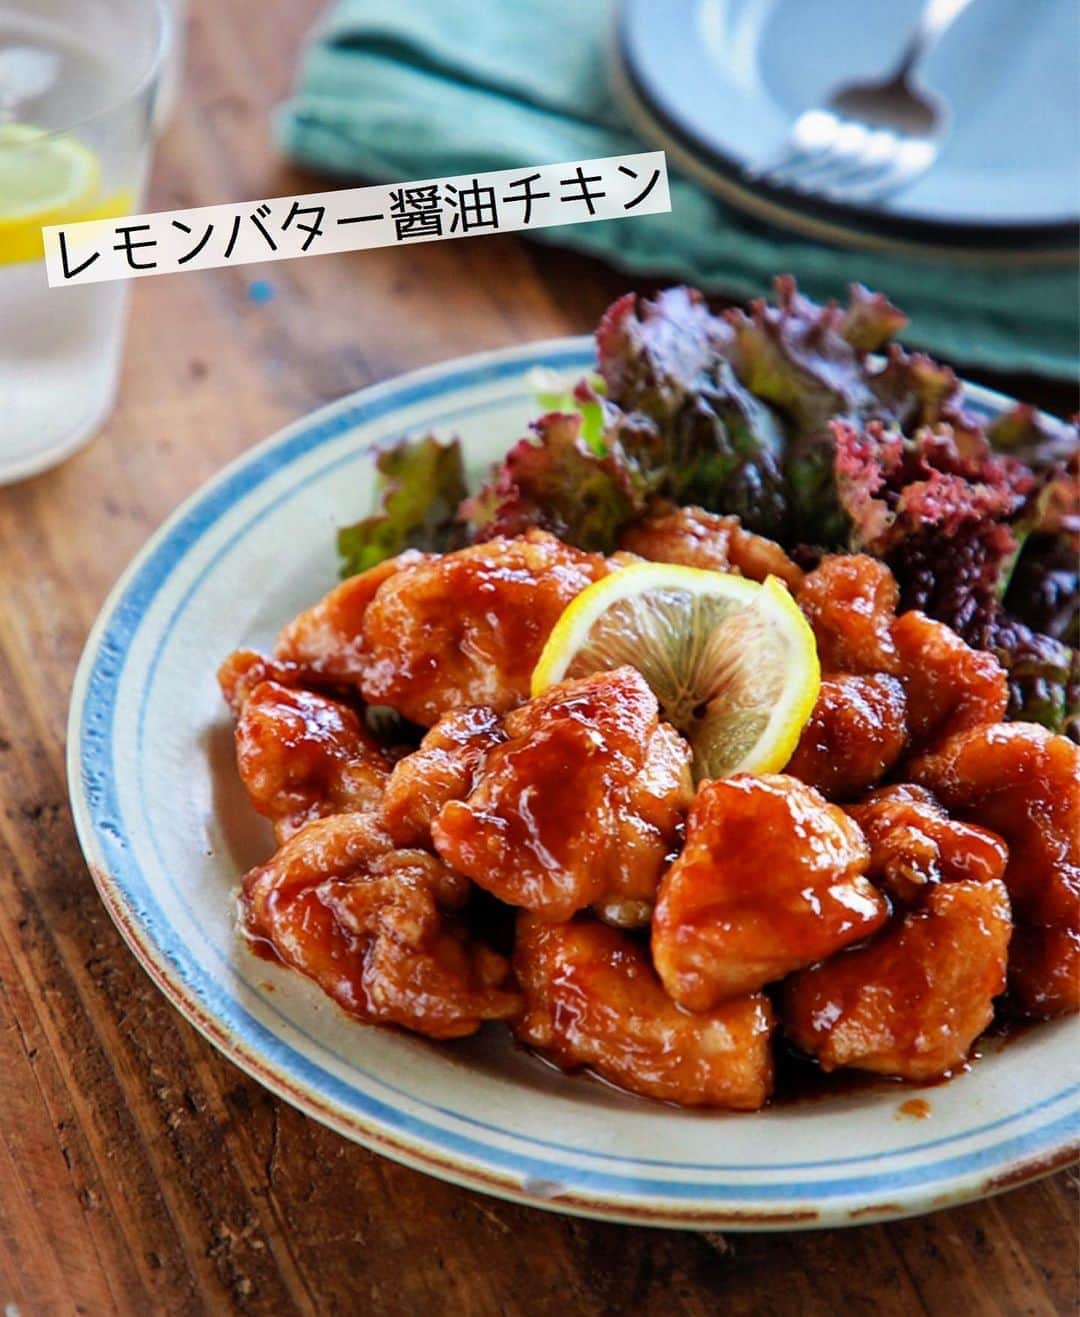 Mizuki【料理ブロガー・簡単レシピ】さんのインスタグラム写真 - (Mizuki【料理ブロガー・簡単レシピ】Instagram)「・﻿ 【レシピ】ーーーーーーーーー﻿ ♡レモンバター醤油チキン♡﻿ ーーーーーーーーーーーーーー﻿ ﻿ ﻿ ﻿ おはようございます(*^^*)﻿ ﻿ 今日ご紹介させていただくのは﻿ レモンバター醤油チキン♡﻿ カリッと焼いた鶏肉に﻿ さっぱりコクのあるソースが相性抜群！﻿ ごはんにもパンにも合いますよ〜♩﻿ ﻿ 今回は鶏もも肉を使用しましたが﻿ むね肉でも作れます(*^^*)﻿ (作り方はポイントに記載☆)﻿ とっても簡単にできるので﻿ よかったらお試し下さいね♩﻿ ﻿ ﻿ ﻿ ーーーーーーーーーーーーーーーーーーーー﻿ 【2人分】﻿ 鶏もも肉...大1枚(300g)﻿ 塩こしょう...少々﻿ 片栗粉...適量﻿ サラダ油...大1﻿ ●醤油・みりん・酒...各大1﻿ ●レモン汁...大1/2﻿ ●にんにくチューブ...2cm﻿ バター...15g﻿ ﻿ 1.鶏肉は3cm大に切り、塩こしょうを振って片栗粉をまぶす。●は合わせておく。﻿ 2.フライパンにサラダ油を中火で熱して鶏肉を焼く。焼き色が付いたら裏返し、フタをして弱めの中火で3分蒸し焼きにする。﻿ 3.余分な油を拭き取り、●とバターを加えて煮からめる。﻿ ーーーーーーーーーーーーーーーーーーーー﻿ ﻿ ﻿ ﻿ 《ポイント》﻿ ♦︎鶏むね肉で作る場合は、全体をフォークで刺して1cm厚さの削ぎ切りにして下さい♩﻿ ♦︎酸味は控えめです♩﻿ ﻿ ﻿ ﻿ ﻿ ﻿ ＿＿＿＿＿＿＿＿＿＿＿＿＿＿＿＿＿＿＿﻿ 📕7刷重版しました📕﻿ 簡単・時短！ 毎日のごはんがラクになる﻿ ✨🦋 【 #Mizukiの今どき和食 】🦋✨﻿ ＿＿＿＿＿＿＿＿＿＿＿＿＿＿＿＿＿＿＿﻿ なるべく少ない材料で﻿ 手間も時間も省きながら﻿ 簡単にできるおいしい和食レシピ♩﻿ 簡単に失敗なくマスターできる一冊で﻿ もっと気軽に、カジュアルに﻿ 和食を楽しんで下さいね(*^^*)﻿ ＿＿＿＿＿＿＿＿＿＿＿＿＿＿＿＿＿＿＿﻿ ﻿ ﻿ ﻿ ＿＿＿＿＿＿＿＿＿＿＿＿＿＿＿＿＿＿＿﻿ 🎀6刷重版しました🎀﻿ 混ぜて焼くだけ。はじめてでも失敗しない！﻿ 【#ホットケーキミックスのお菓子 】﻿ ﻿ 一冊まるっとホケミスイーツ♩﻿ 普段のおやつから﻿ 特別な日にも使えるレシピを﻿ この一冊に詰め込みました(*^^*)﻿ ホットケーキミックスを使えば﻿ 簡単に本格的なお菓子が作れますよ♡﻿ ＿＿＿＿＿＿＿＿＿＿＿＿＿＿＿＿＿﻿ ﻿ ﻿ ﻿ ﻿ ￣￣￣￣￣￣￣￣￣￣￣￣￣￣￣￣￣￣﻿ レシピを作って下さった際や﻿ レシピ本についてのご投稿には﻿ タグ付け( @mizuki_31cafe )して﻿ お知らせいただけると嬉しいです😊💕﻿ ＿＿＿＿＿＿＿＿＿＿＿＿＿＿＿＿＿＿﻿ ﻿ ﻿ ﻿ ﻿ ﻿ #鶏肉#チキンソテー#レモン#バター醤油﻿ #Mizuki#簡単レシピ#時短レシピ#節約レシピ#料理#レシピ#フーディーテーブル#マカロニメイト#おうちごはん#デリスタグラマー#料理好きな人と繋がりたい#食べ物#料理記録#おうちごはんlover#写真好きな人と繋がりたい#foodpic#cooking#recipe#lin_stagrammer#foodporn#yummy#レモンバター醤油チキンm」8月24日 7時00分 - mizuki_31cafe